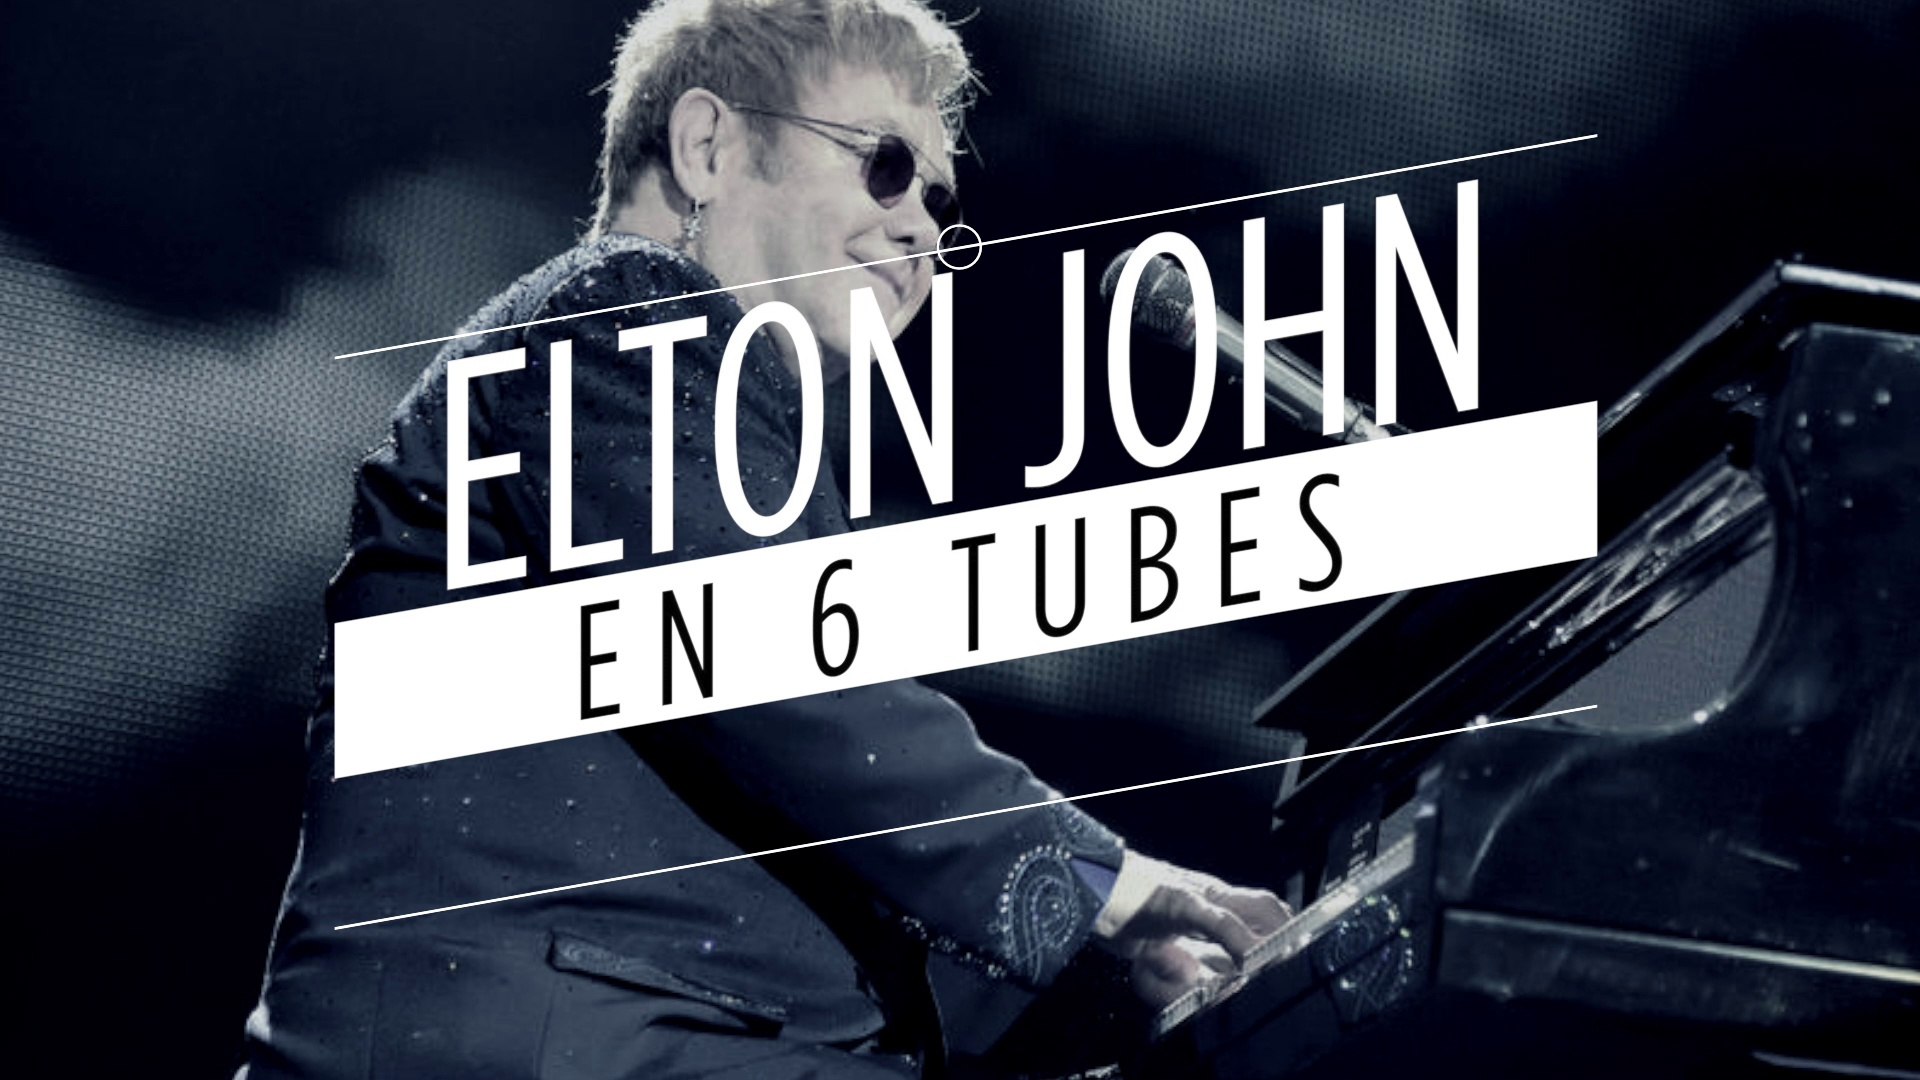 Elton John en 6 tubes - Vidéo Dailymotion